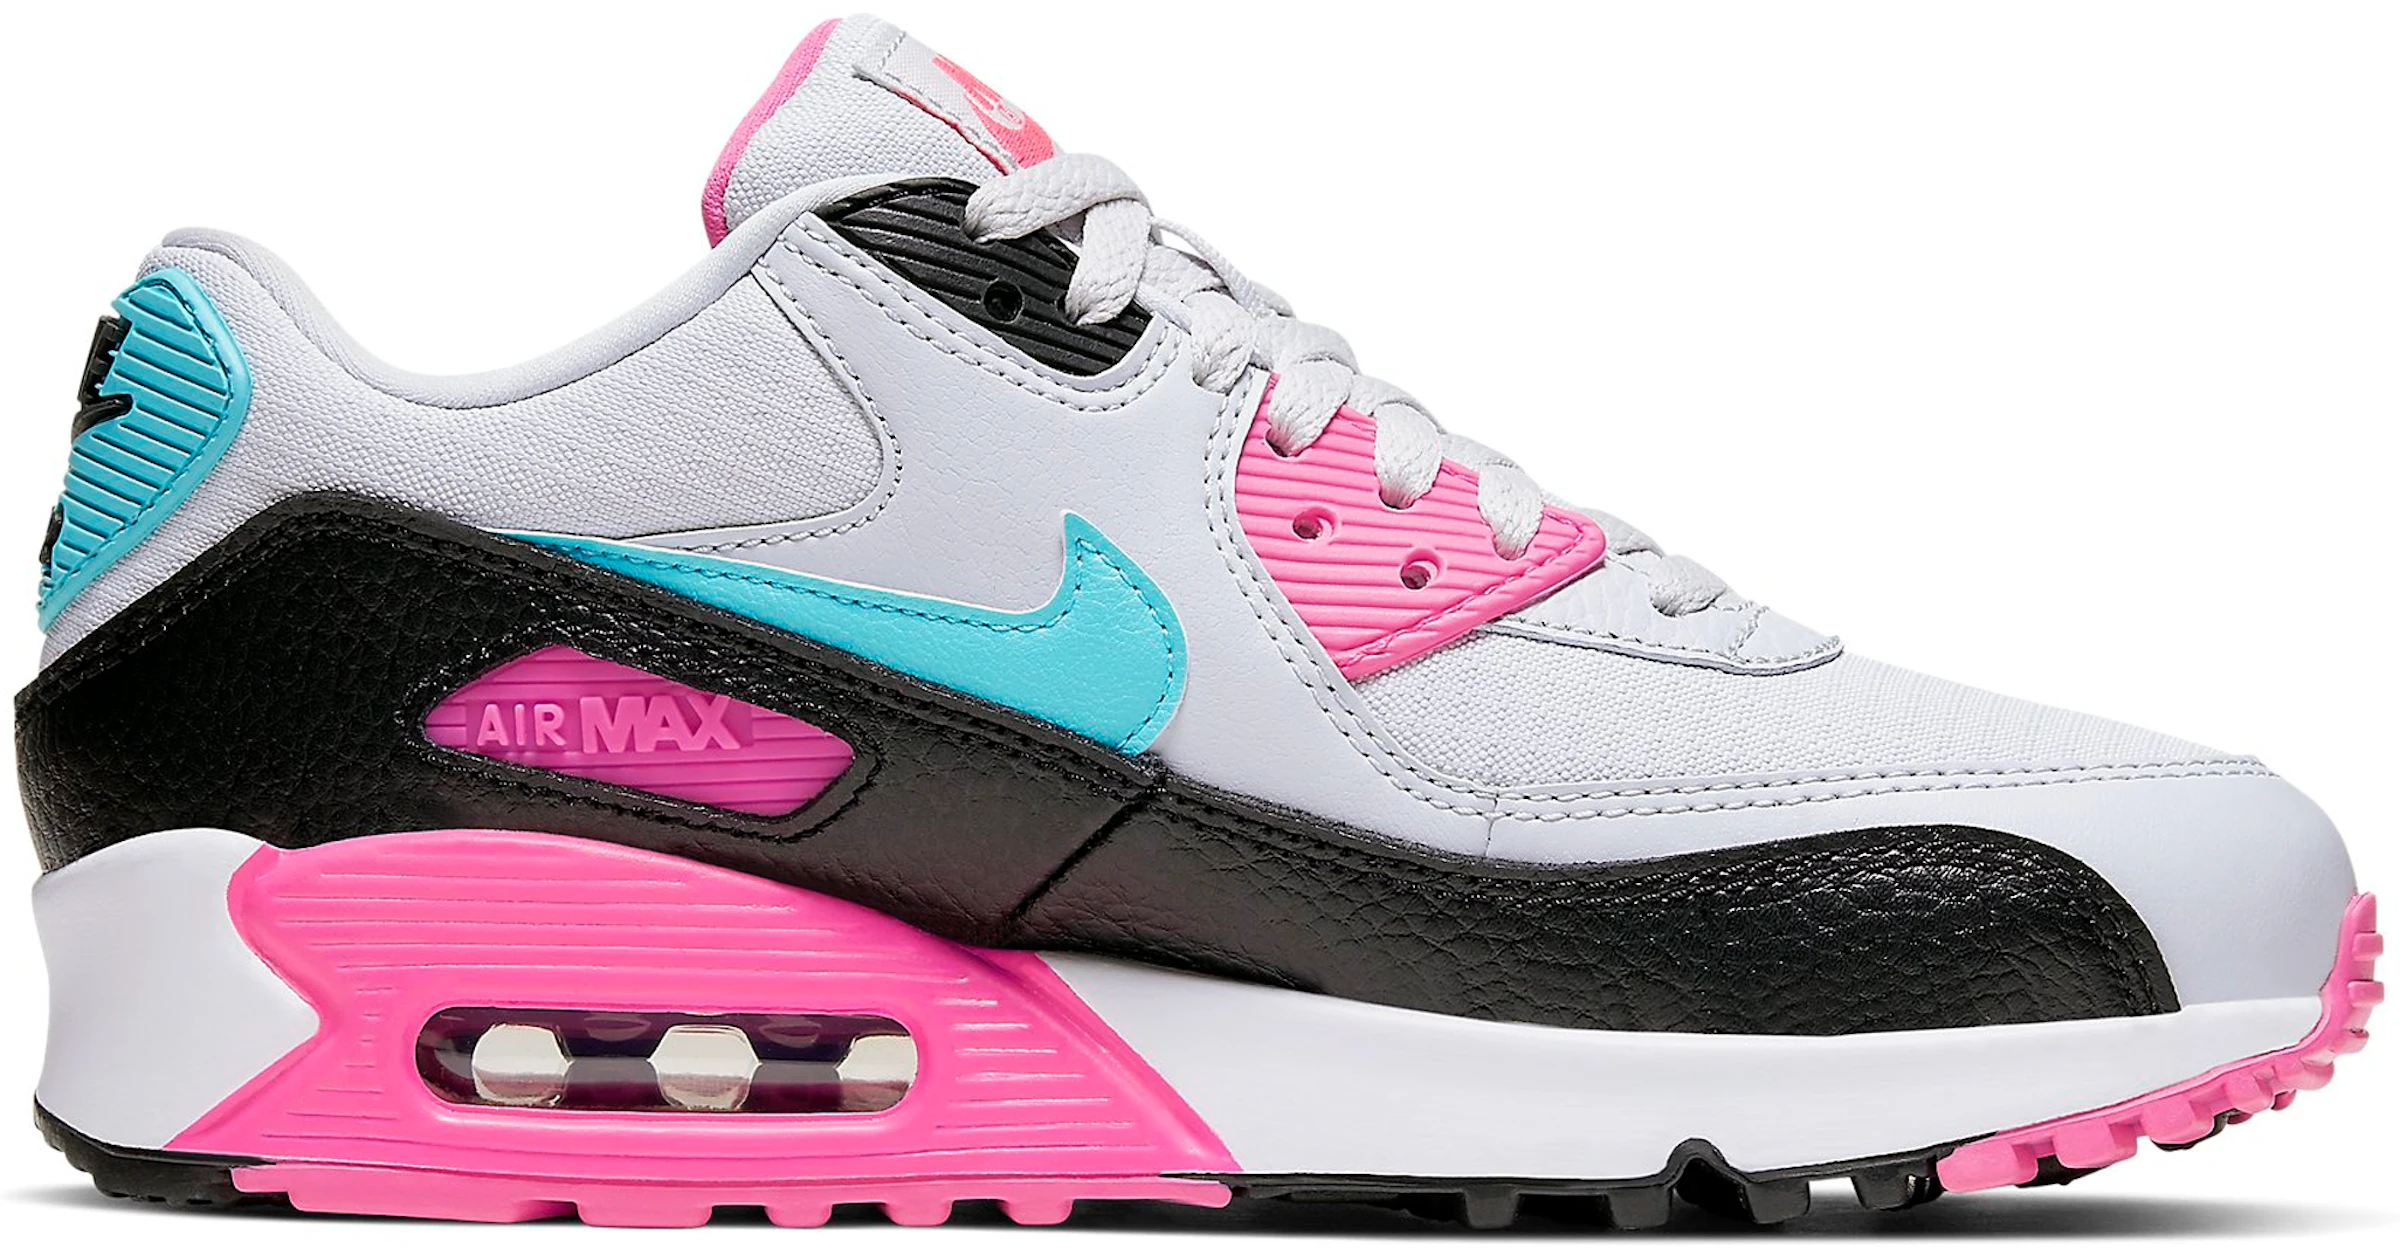 Nike Air Max South Beach Pink Teal (Women's) 325213-065 - US